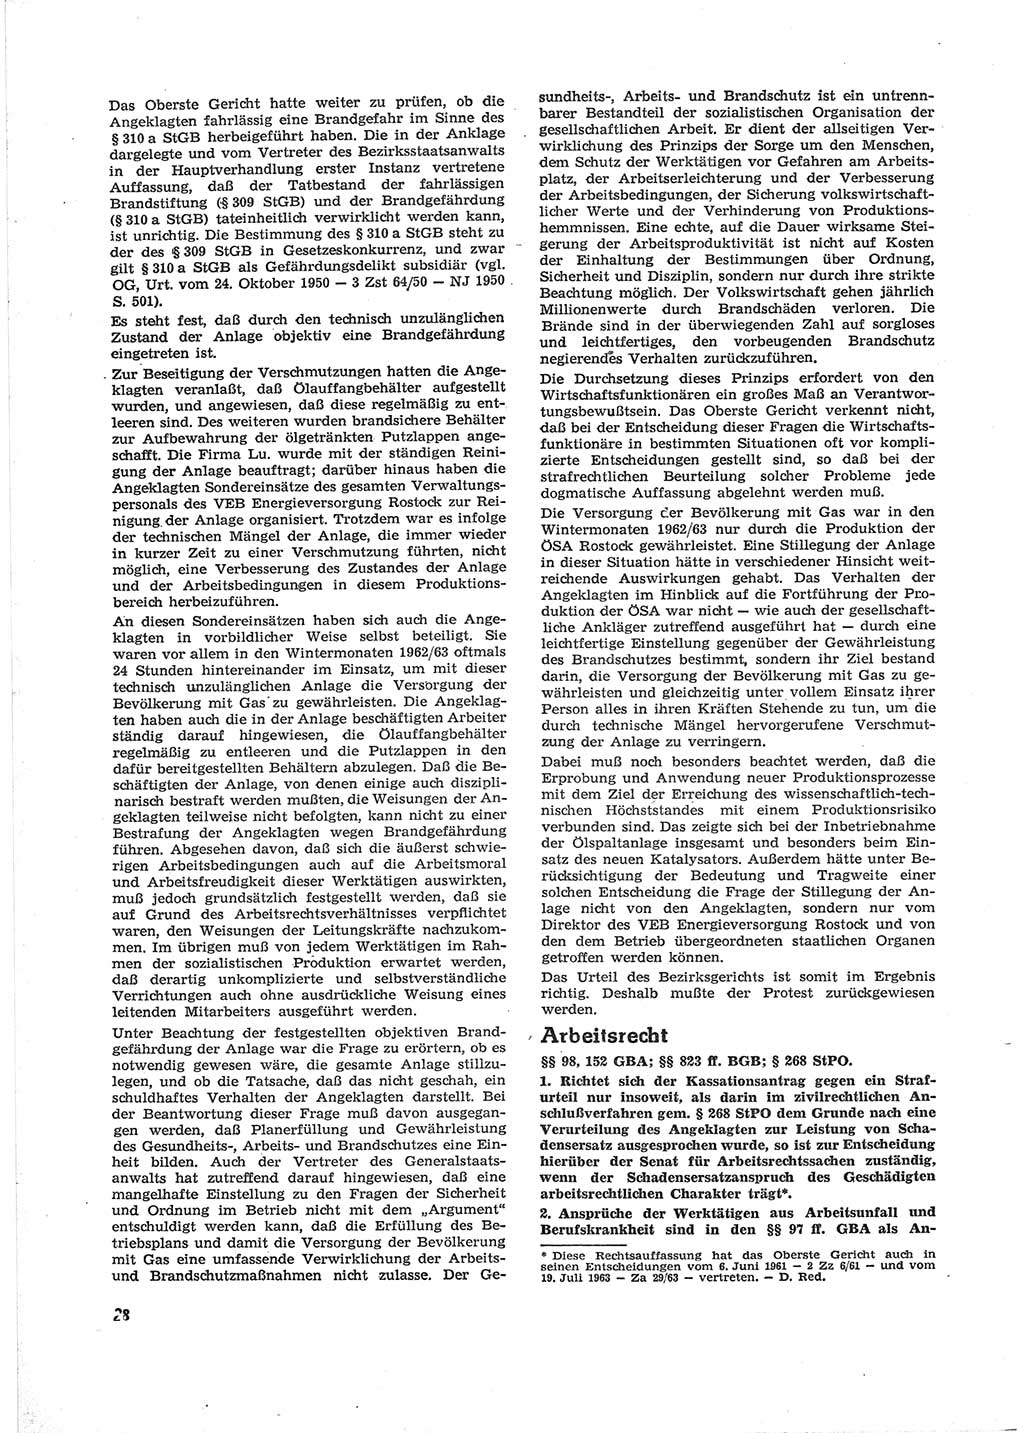 Neue Justiz (NJ), Zeitschrift für Recht und Rechtswissenschaft [Deutsche Demokratische Republik (DDR)], 18. Jahrgang 1964, Seite 28 (NJ DDR 1964, S. 28)